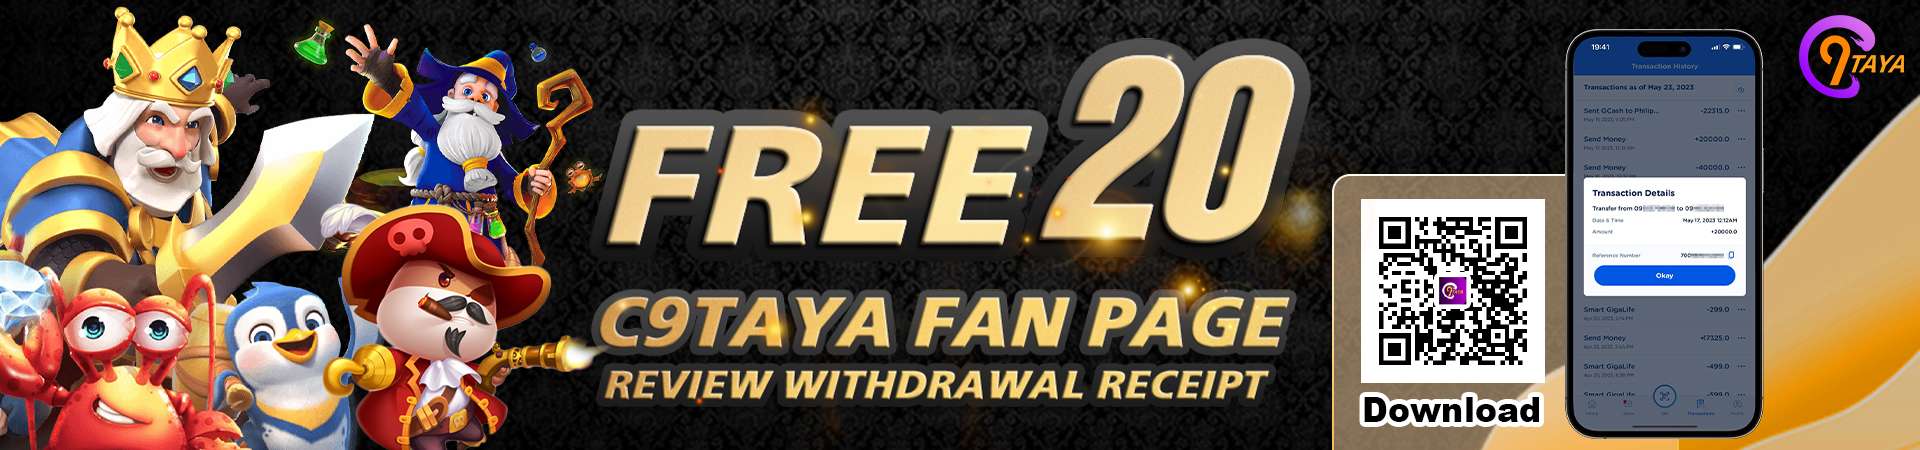 C9taya Free 20